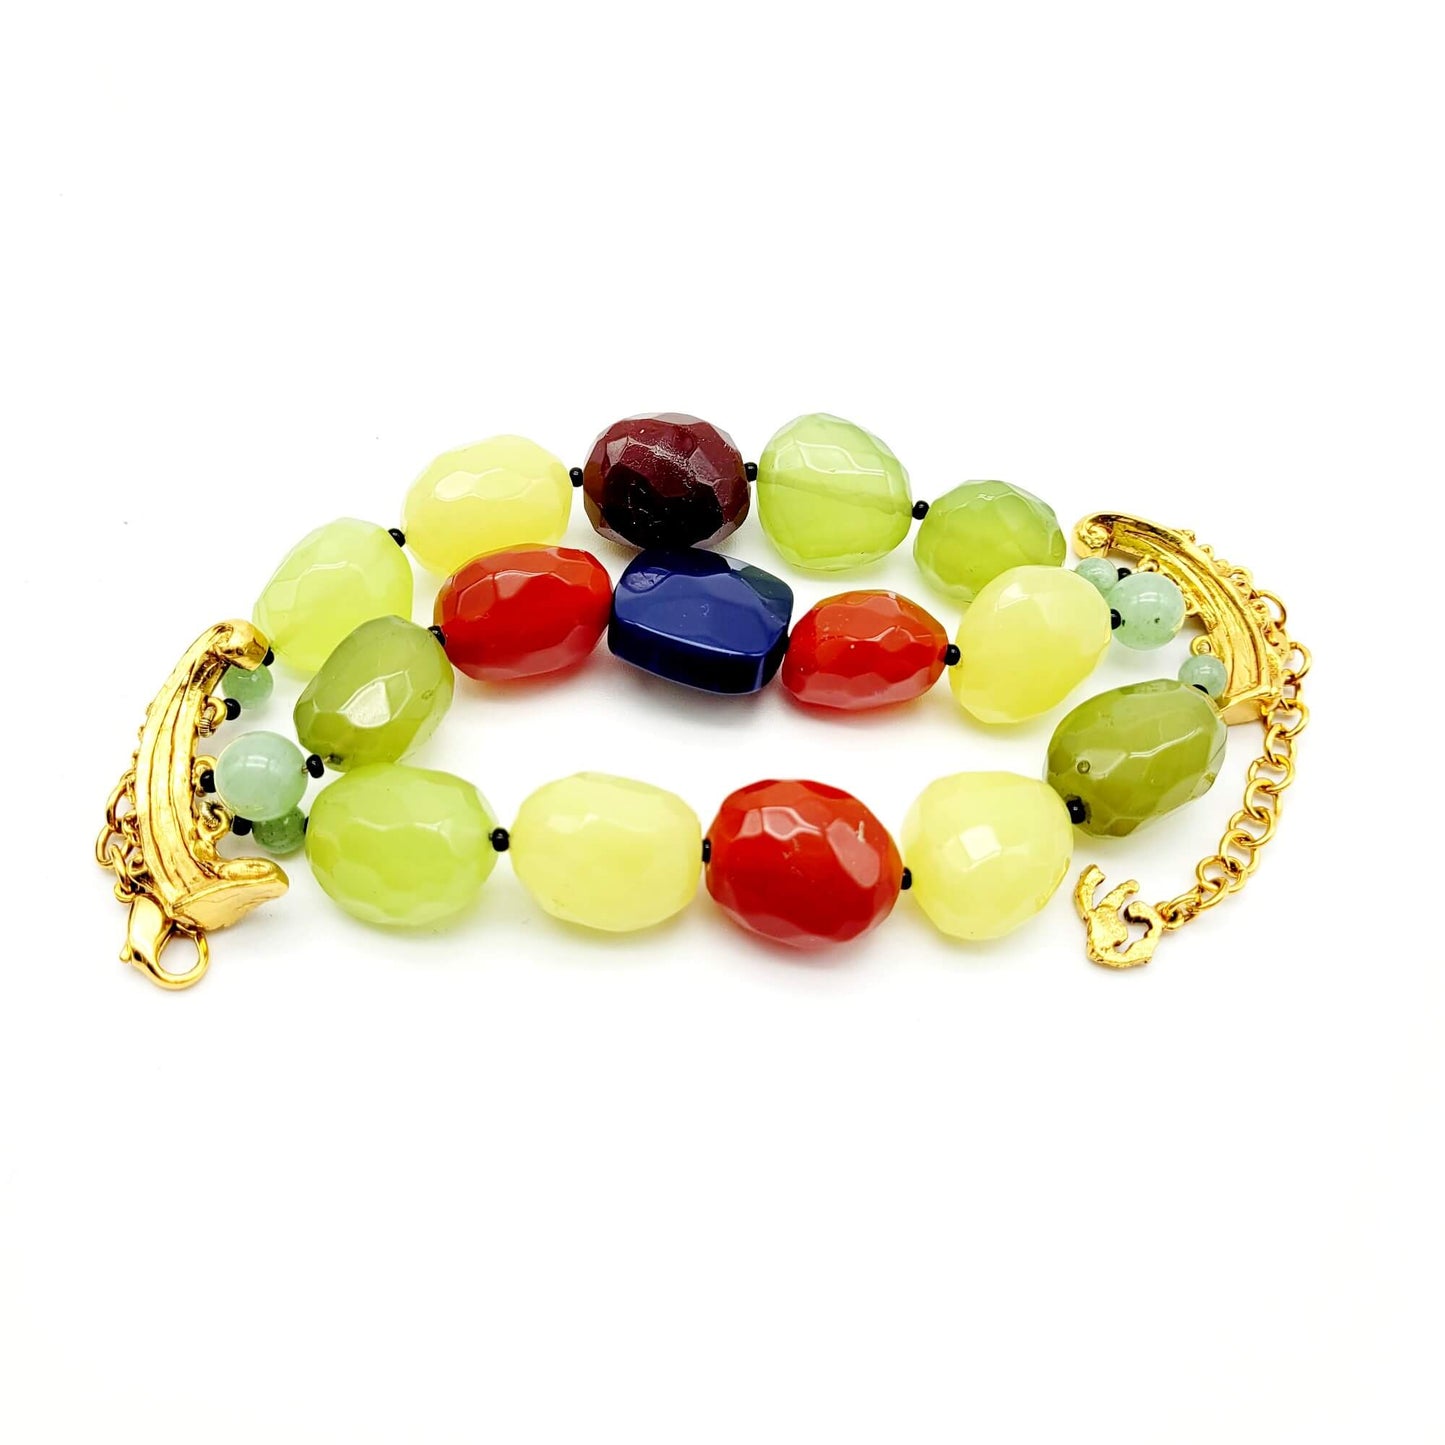 Original vintage Christian Lacroix Multicolor Bead Bracelet